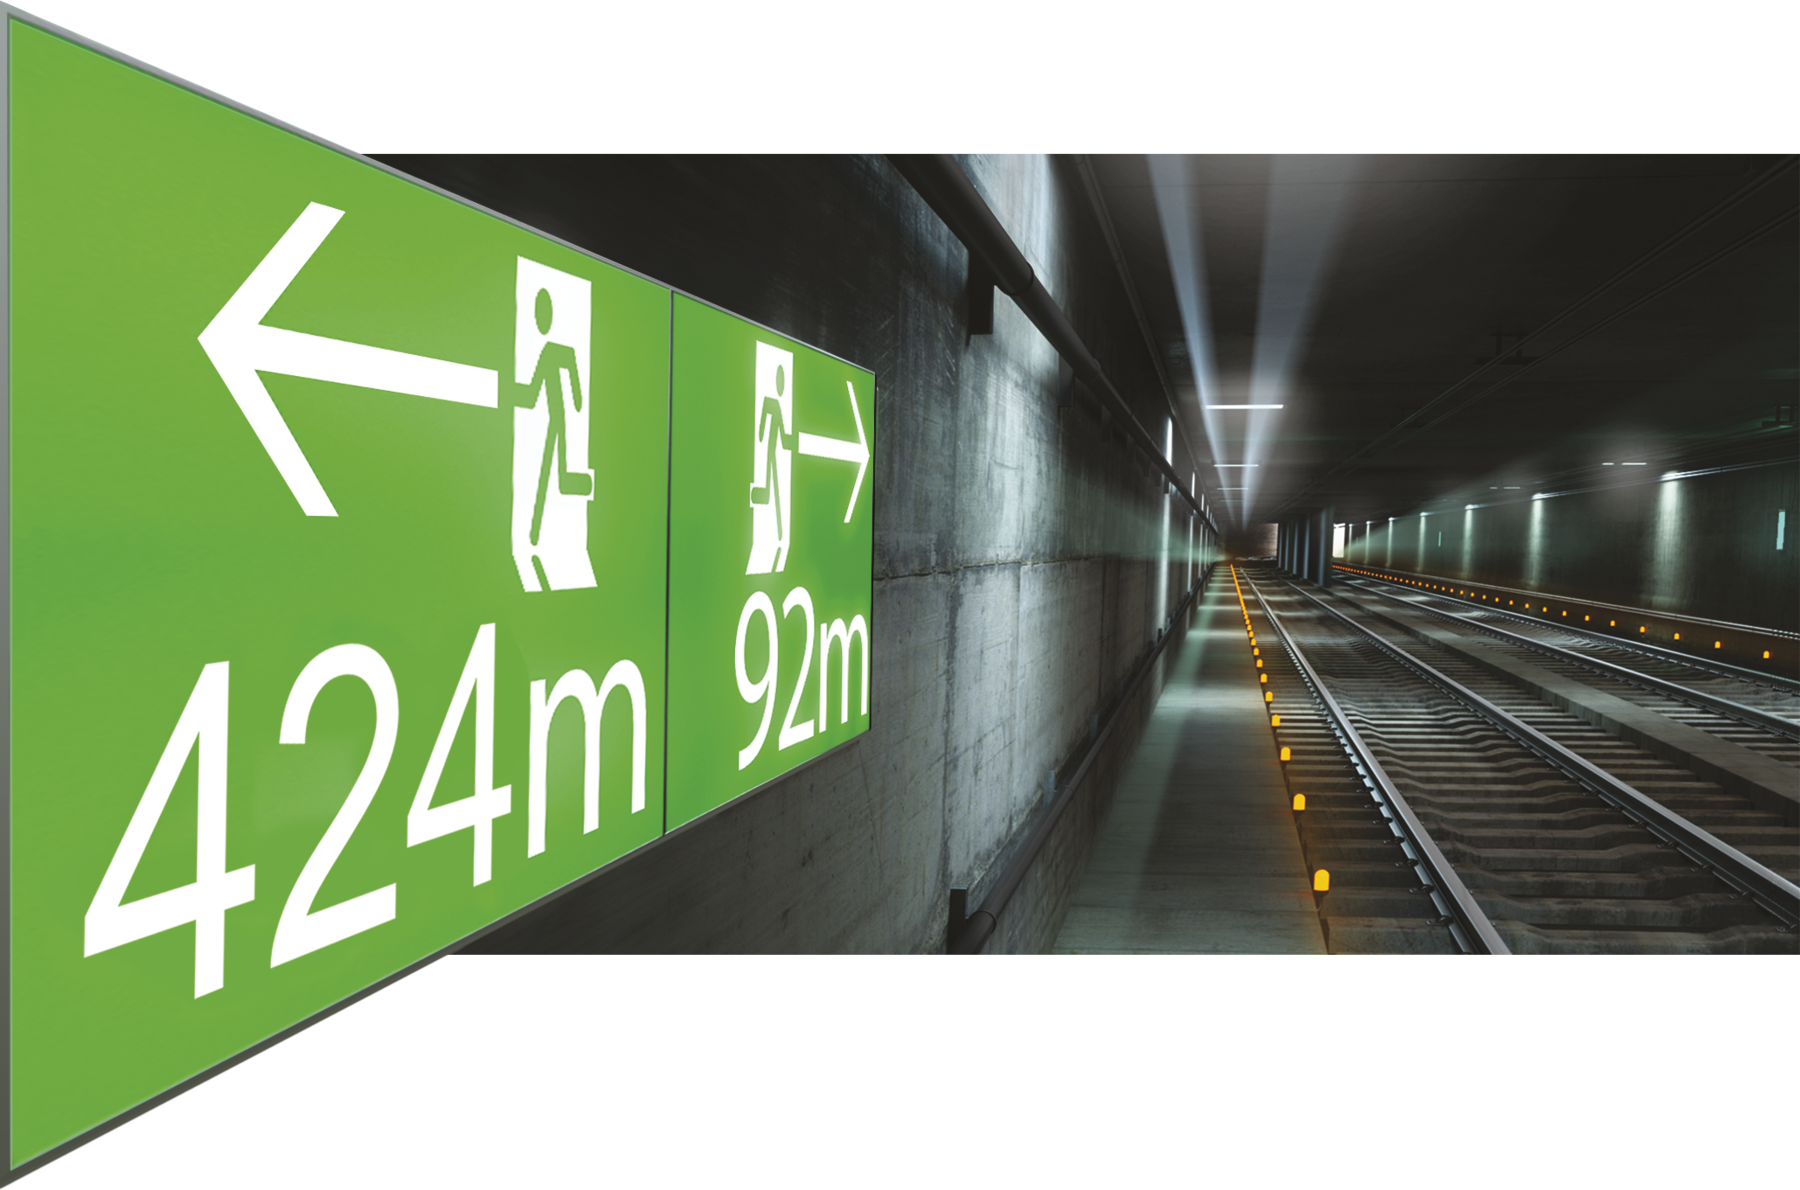 Fotografia. Túnel de metrô com ilustração de placa retangular com fundo verde na lateral esquerda do túnel. Na parte esquerda placa, desenho de silhueta de uma pessoa e seta para esquerda indicando 424 metros. Na parte direita da placa, desenho de silhueta de uma pessoa andando e seta para a direita indicando 92 metros.